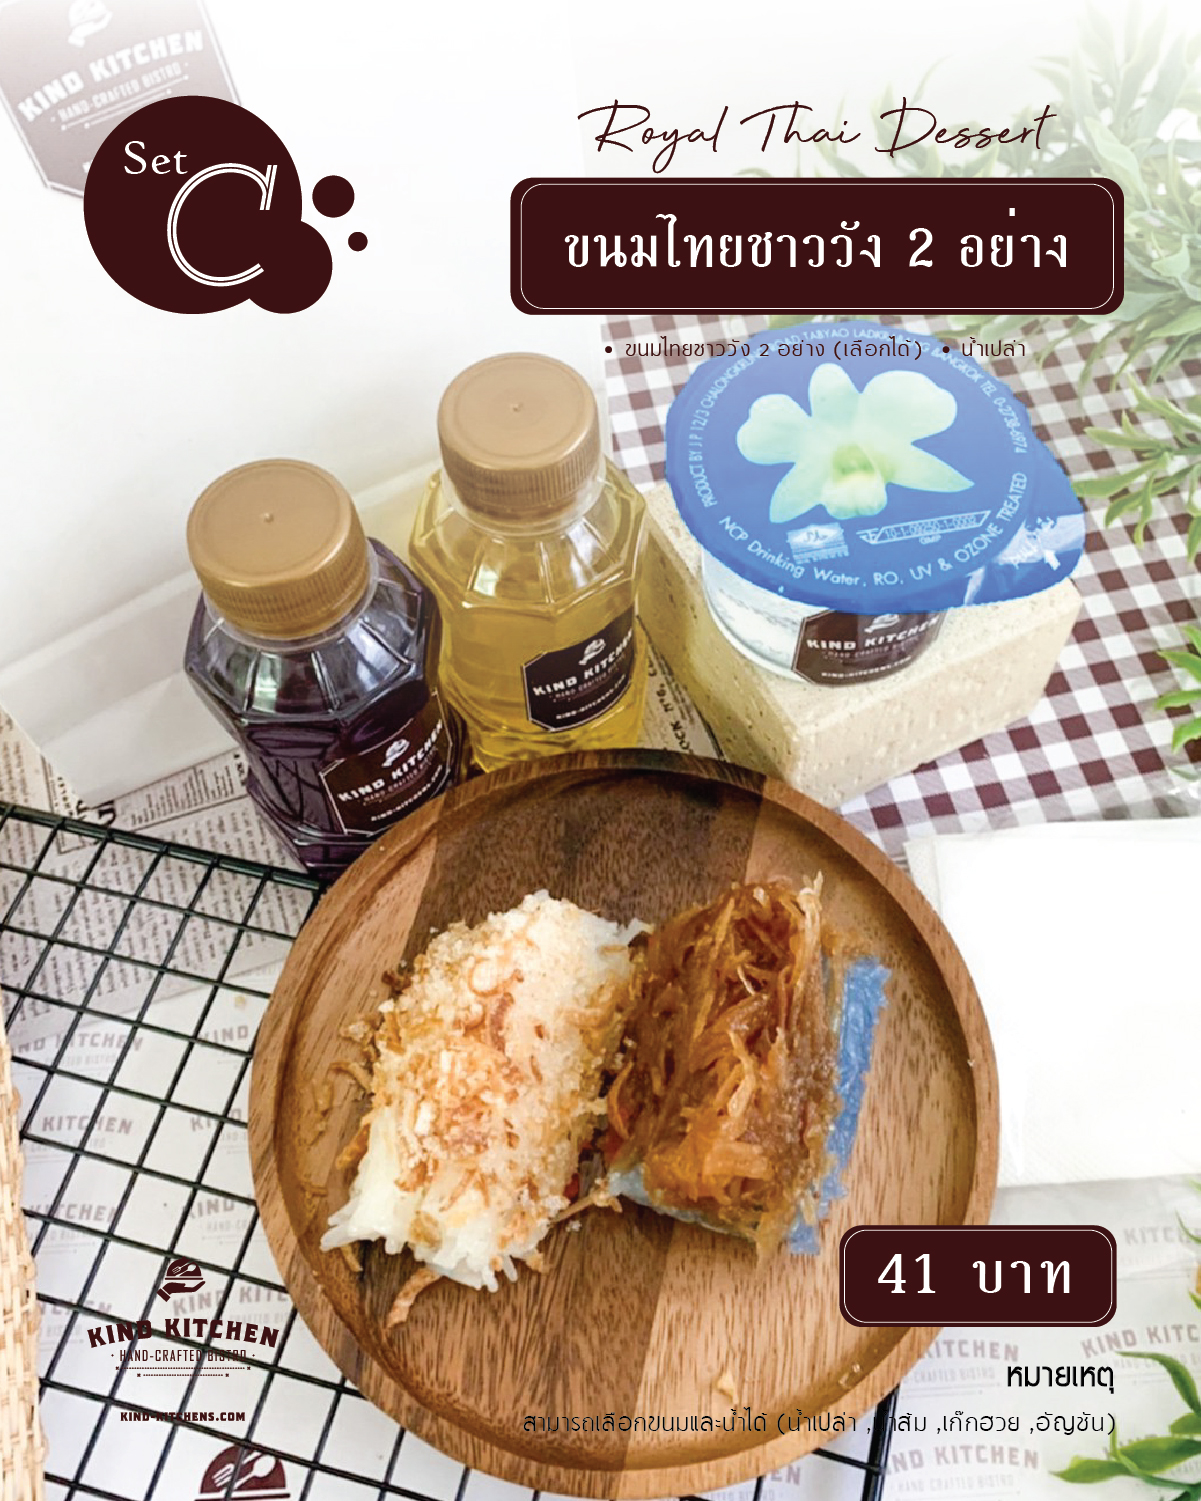 Royal Thai Dessert ขนมชาววัง 2 อย่าง พร้อมน้ำ(เลือกได้) Set C